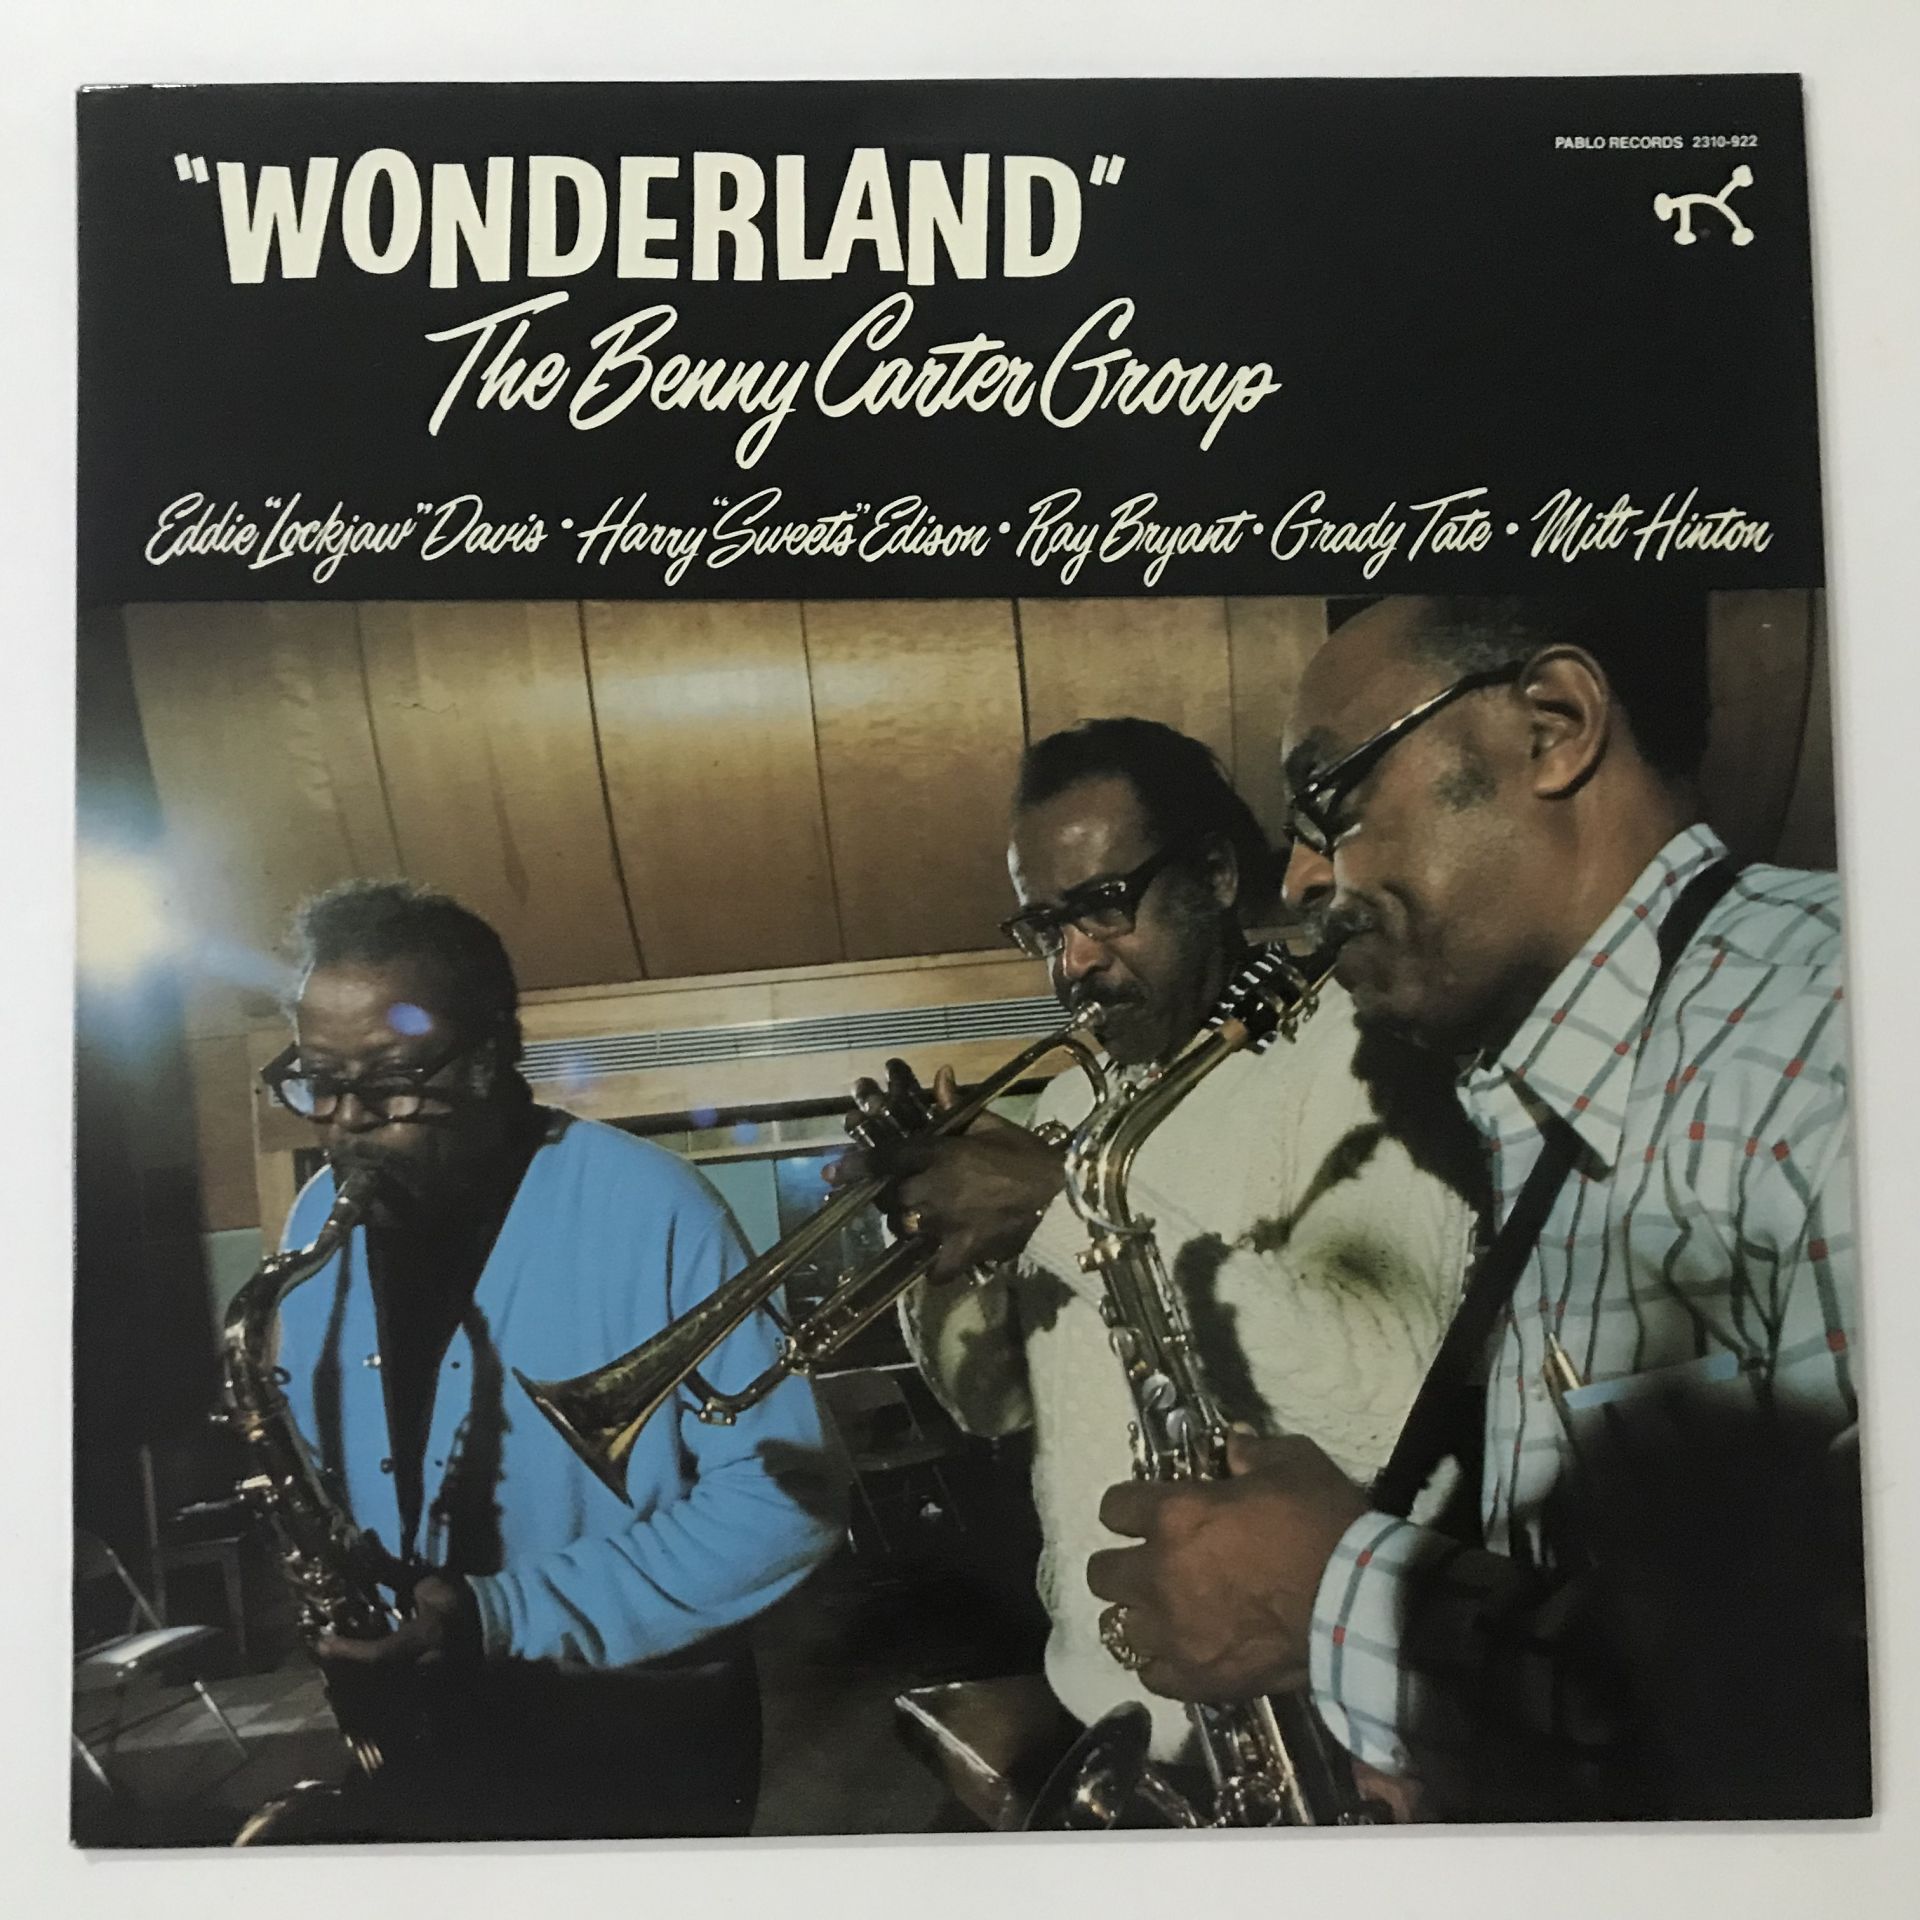 The Benny Carter Group – Wonderland